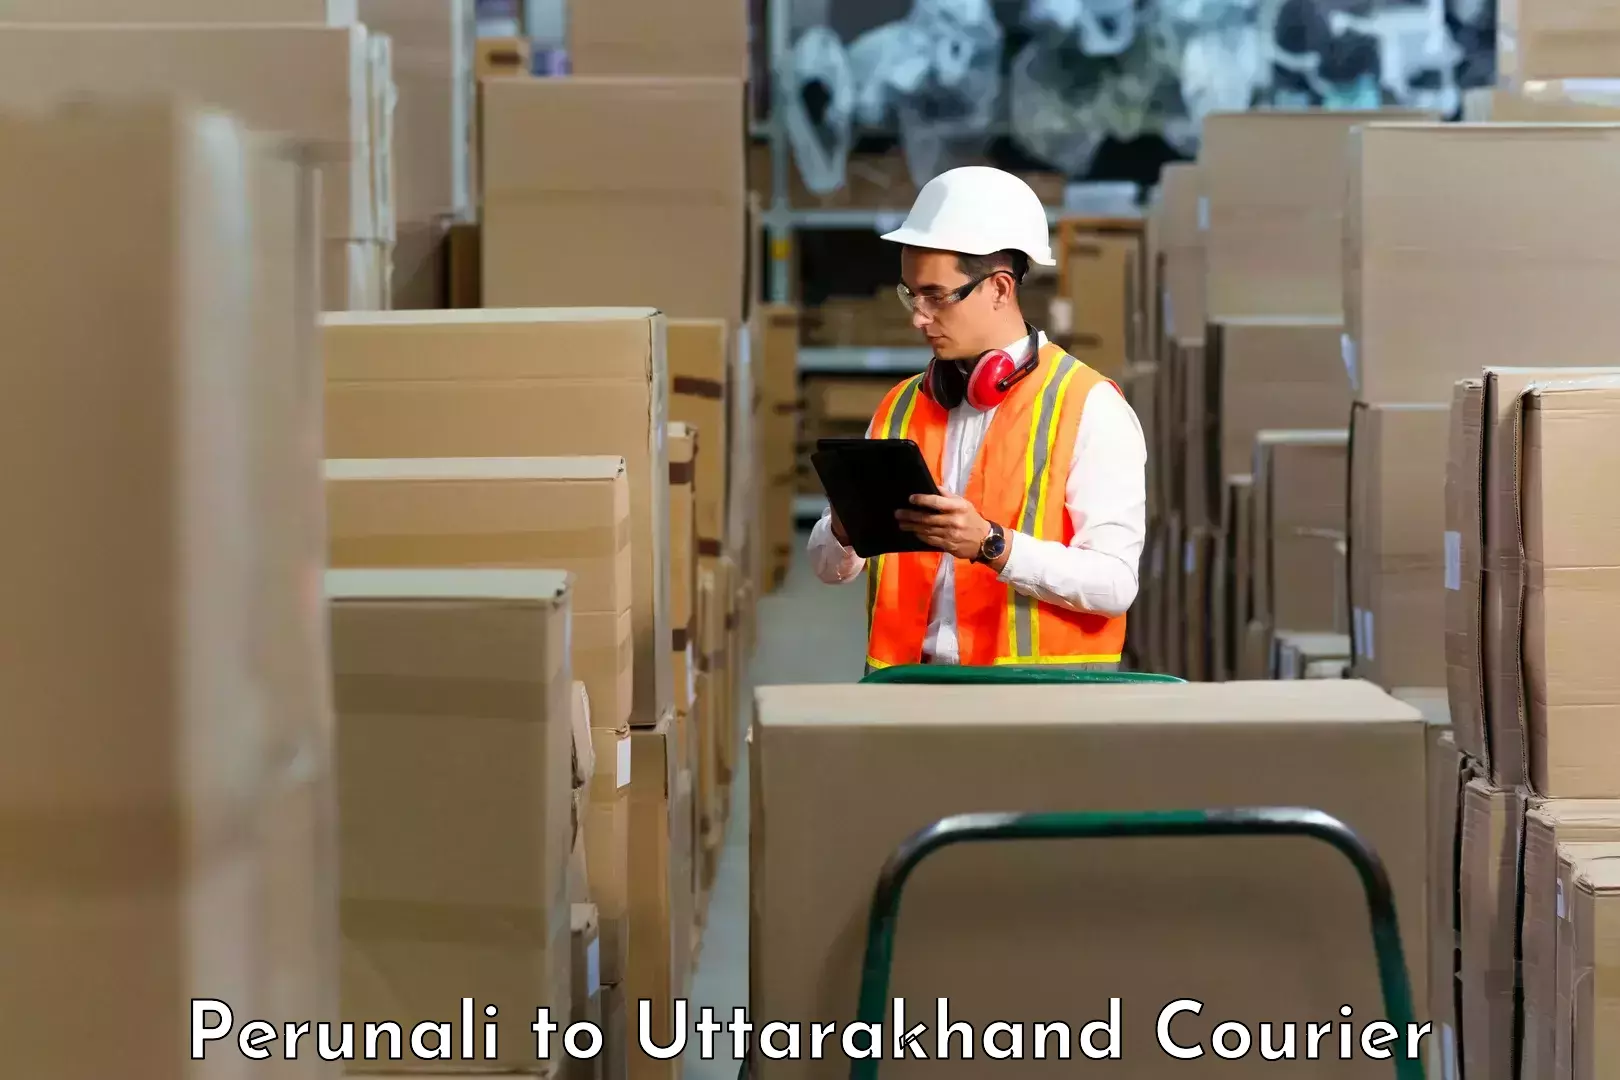 Tailored delivery services Perunali to Dehradun